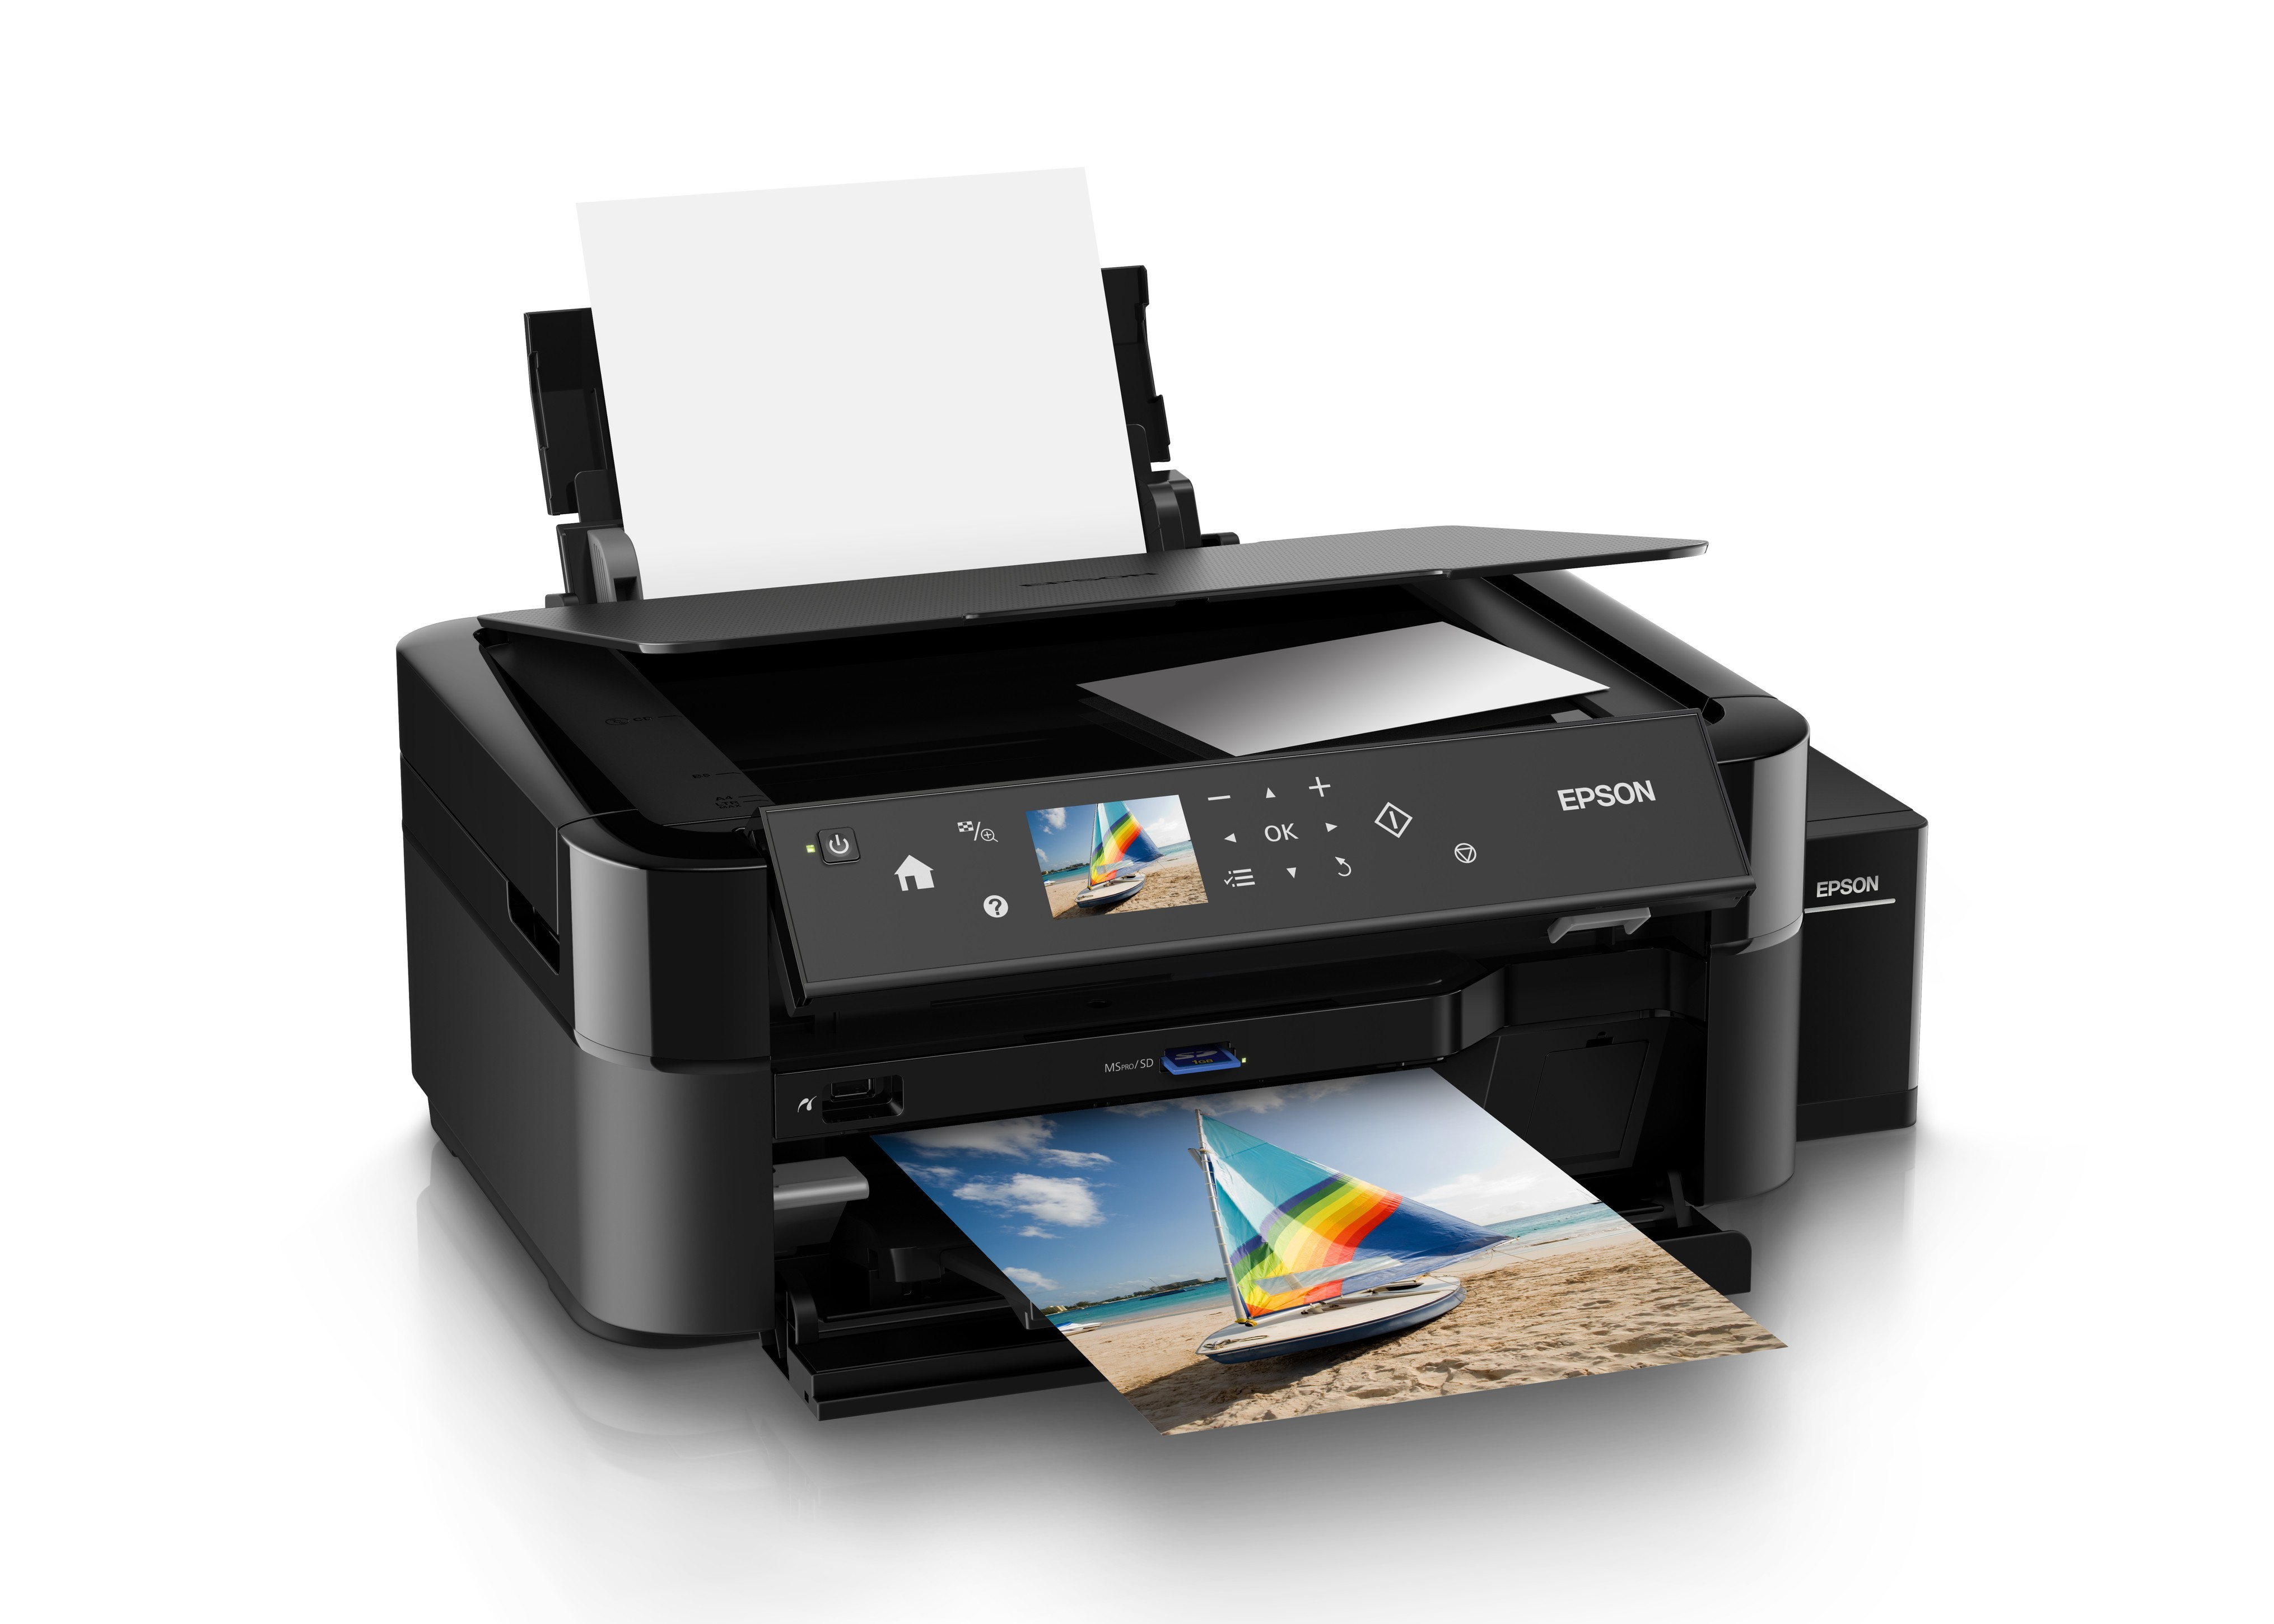 Принтеры печатающие без чернил. C11ce31402 МФУ Epson l850. Принтер Epson l850. Принтер Эпсон 850. МФУ струйный Epson l850.